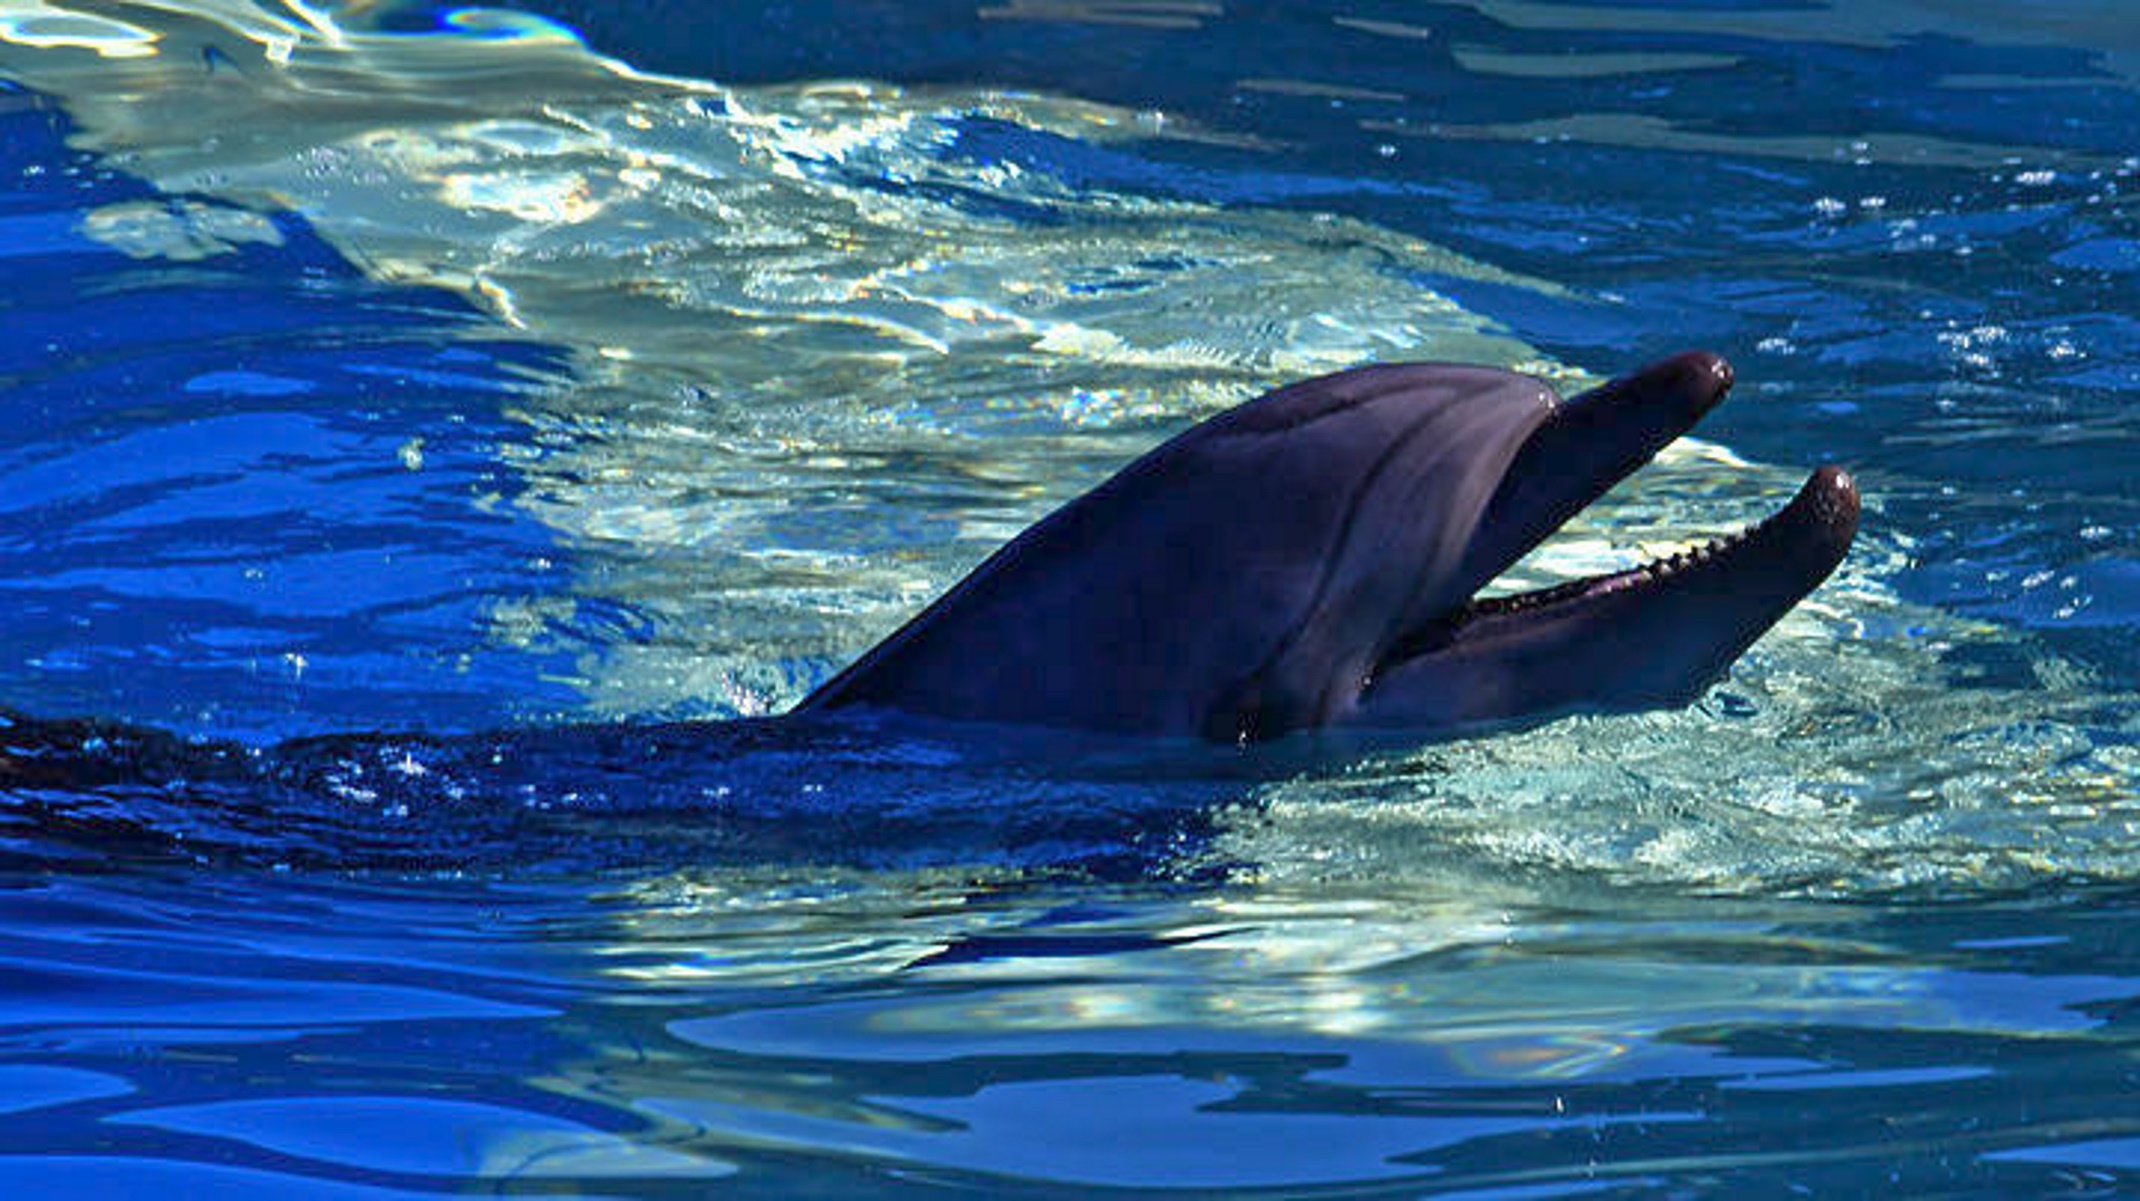 Σάμος: Η θάλασσα ξέβρασε ένα νεκρό δελφίνι – Τι δείχνουν τα σημάδια στο σώμα του